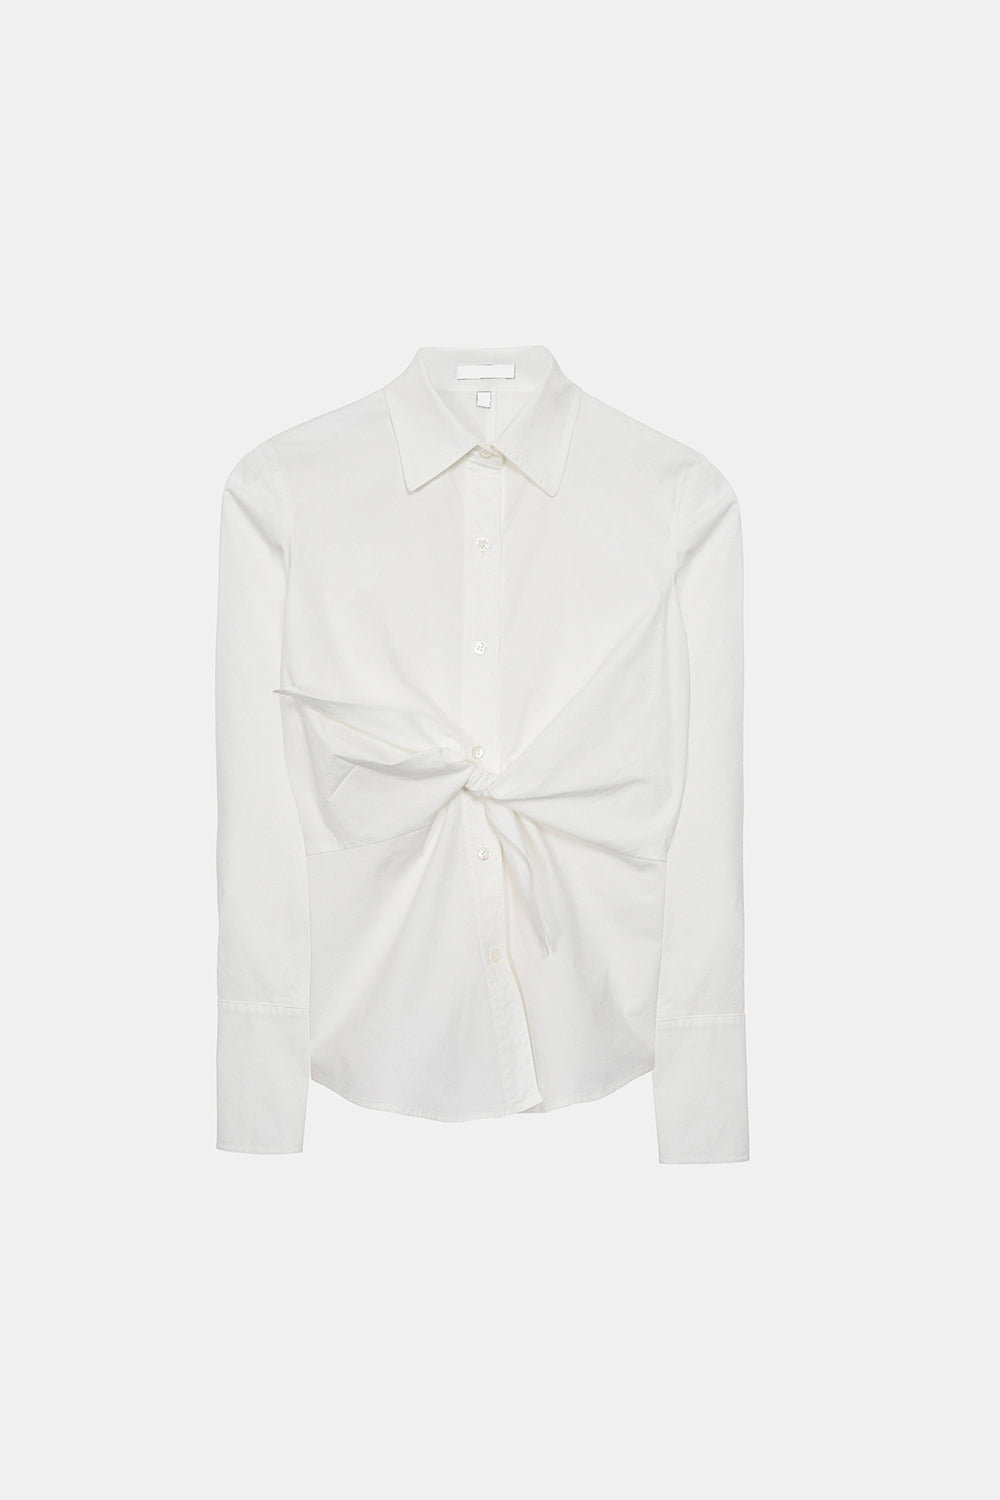 Anne Klein Vintage White Shirt